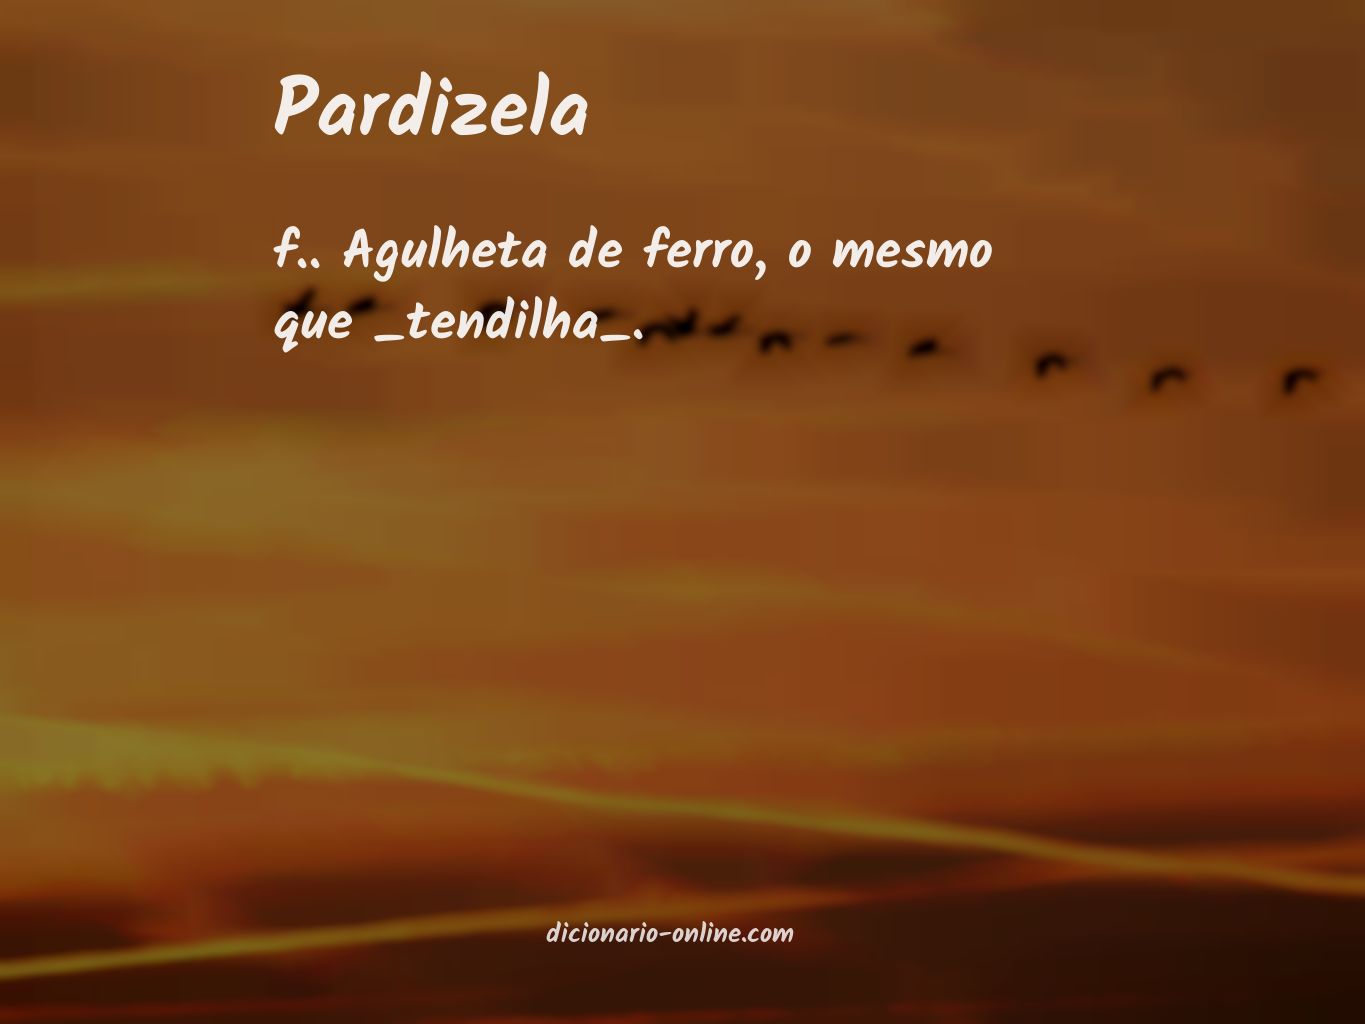 Significado de pardizela